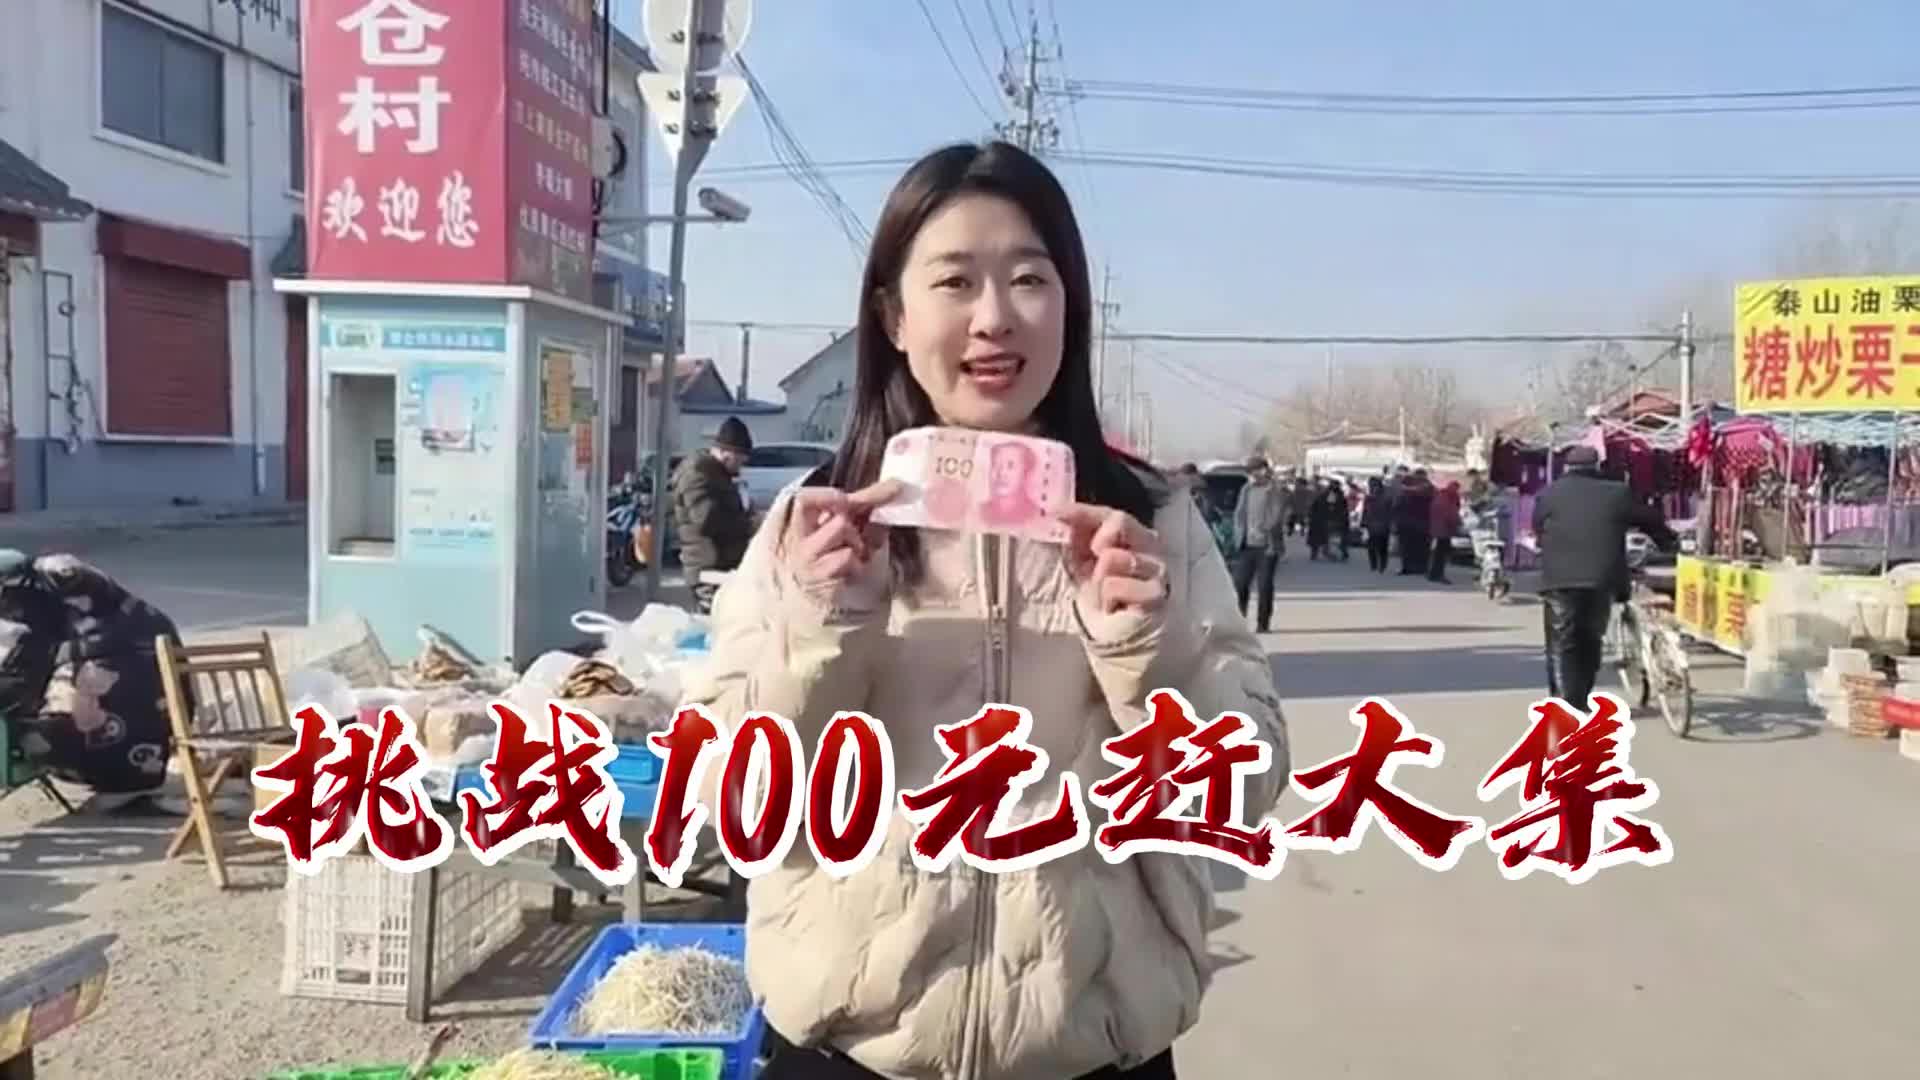 更济宁丨挑战100元赶大集